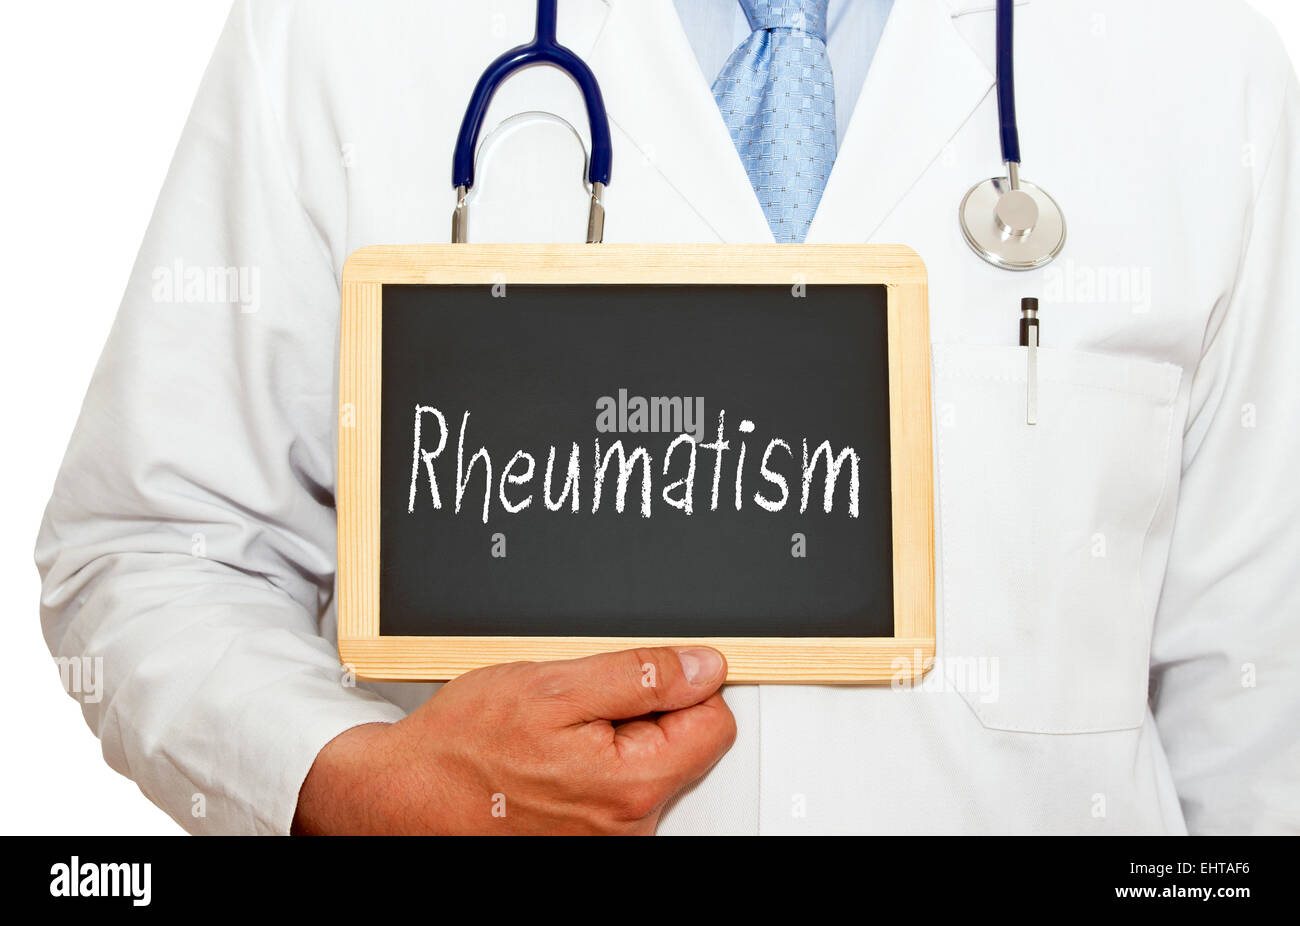 Rheumatism Stock Photo